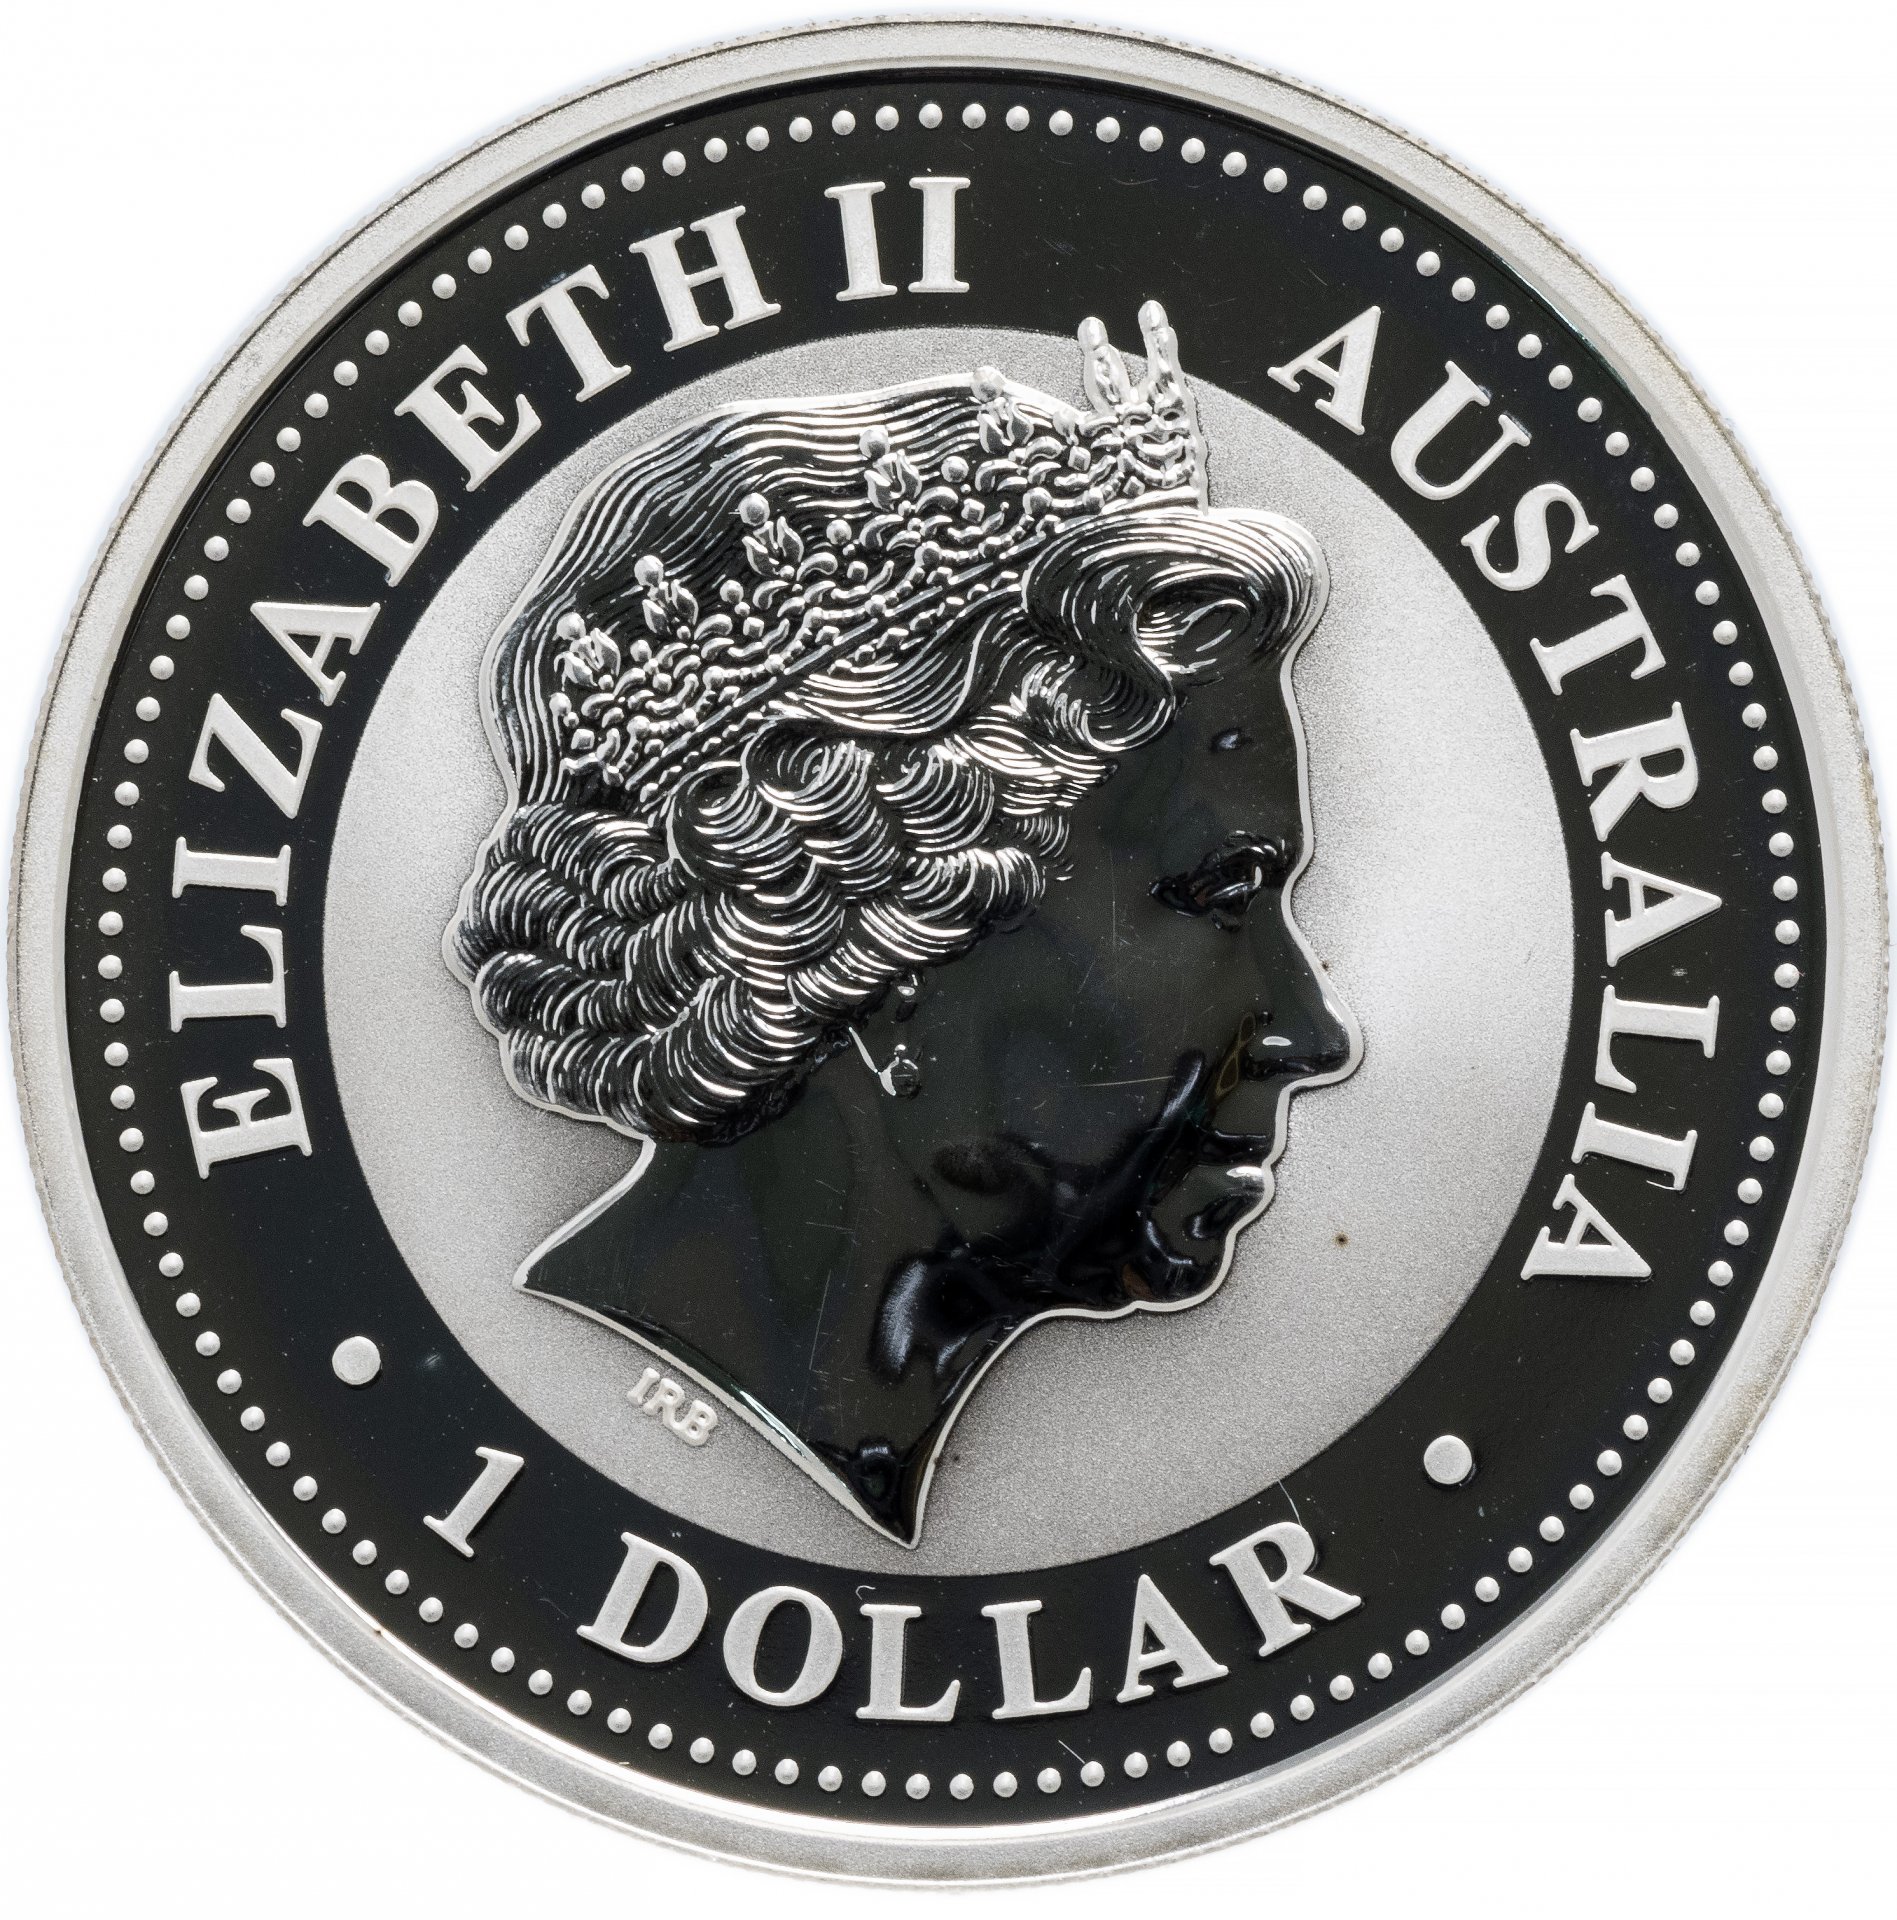 Серебряная монета Австралии с кукобарой стоимость. 1 доллар 2006